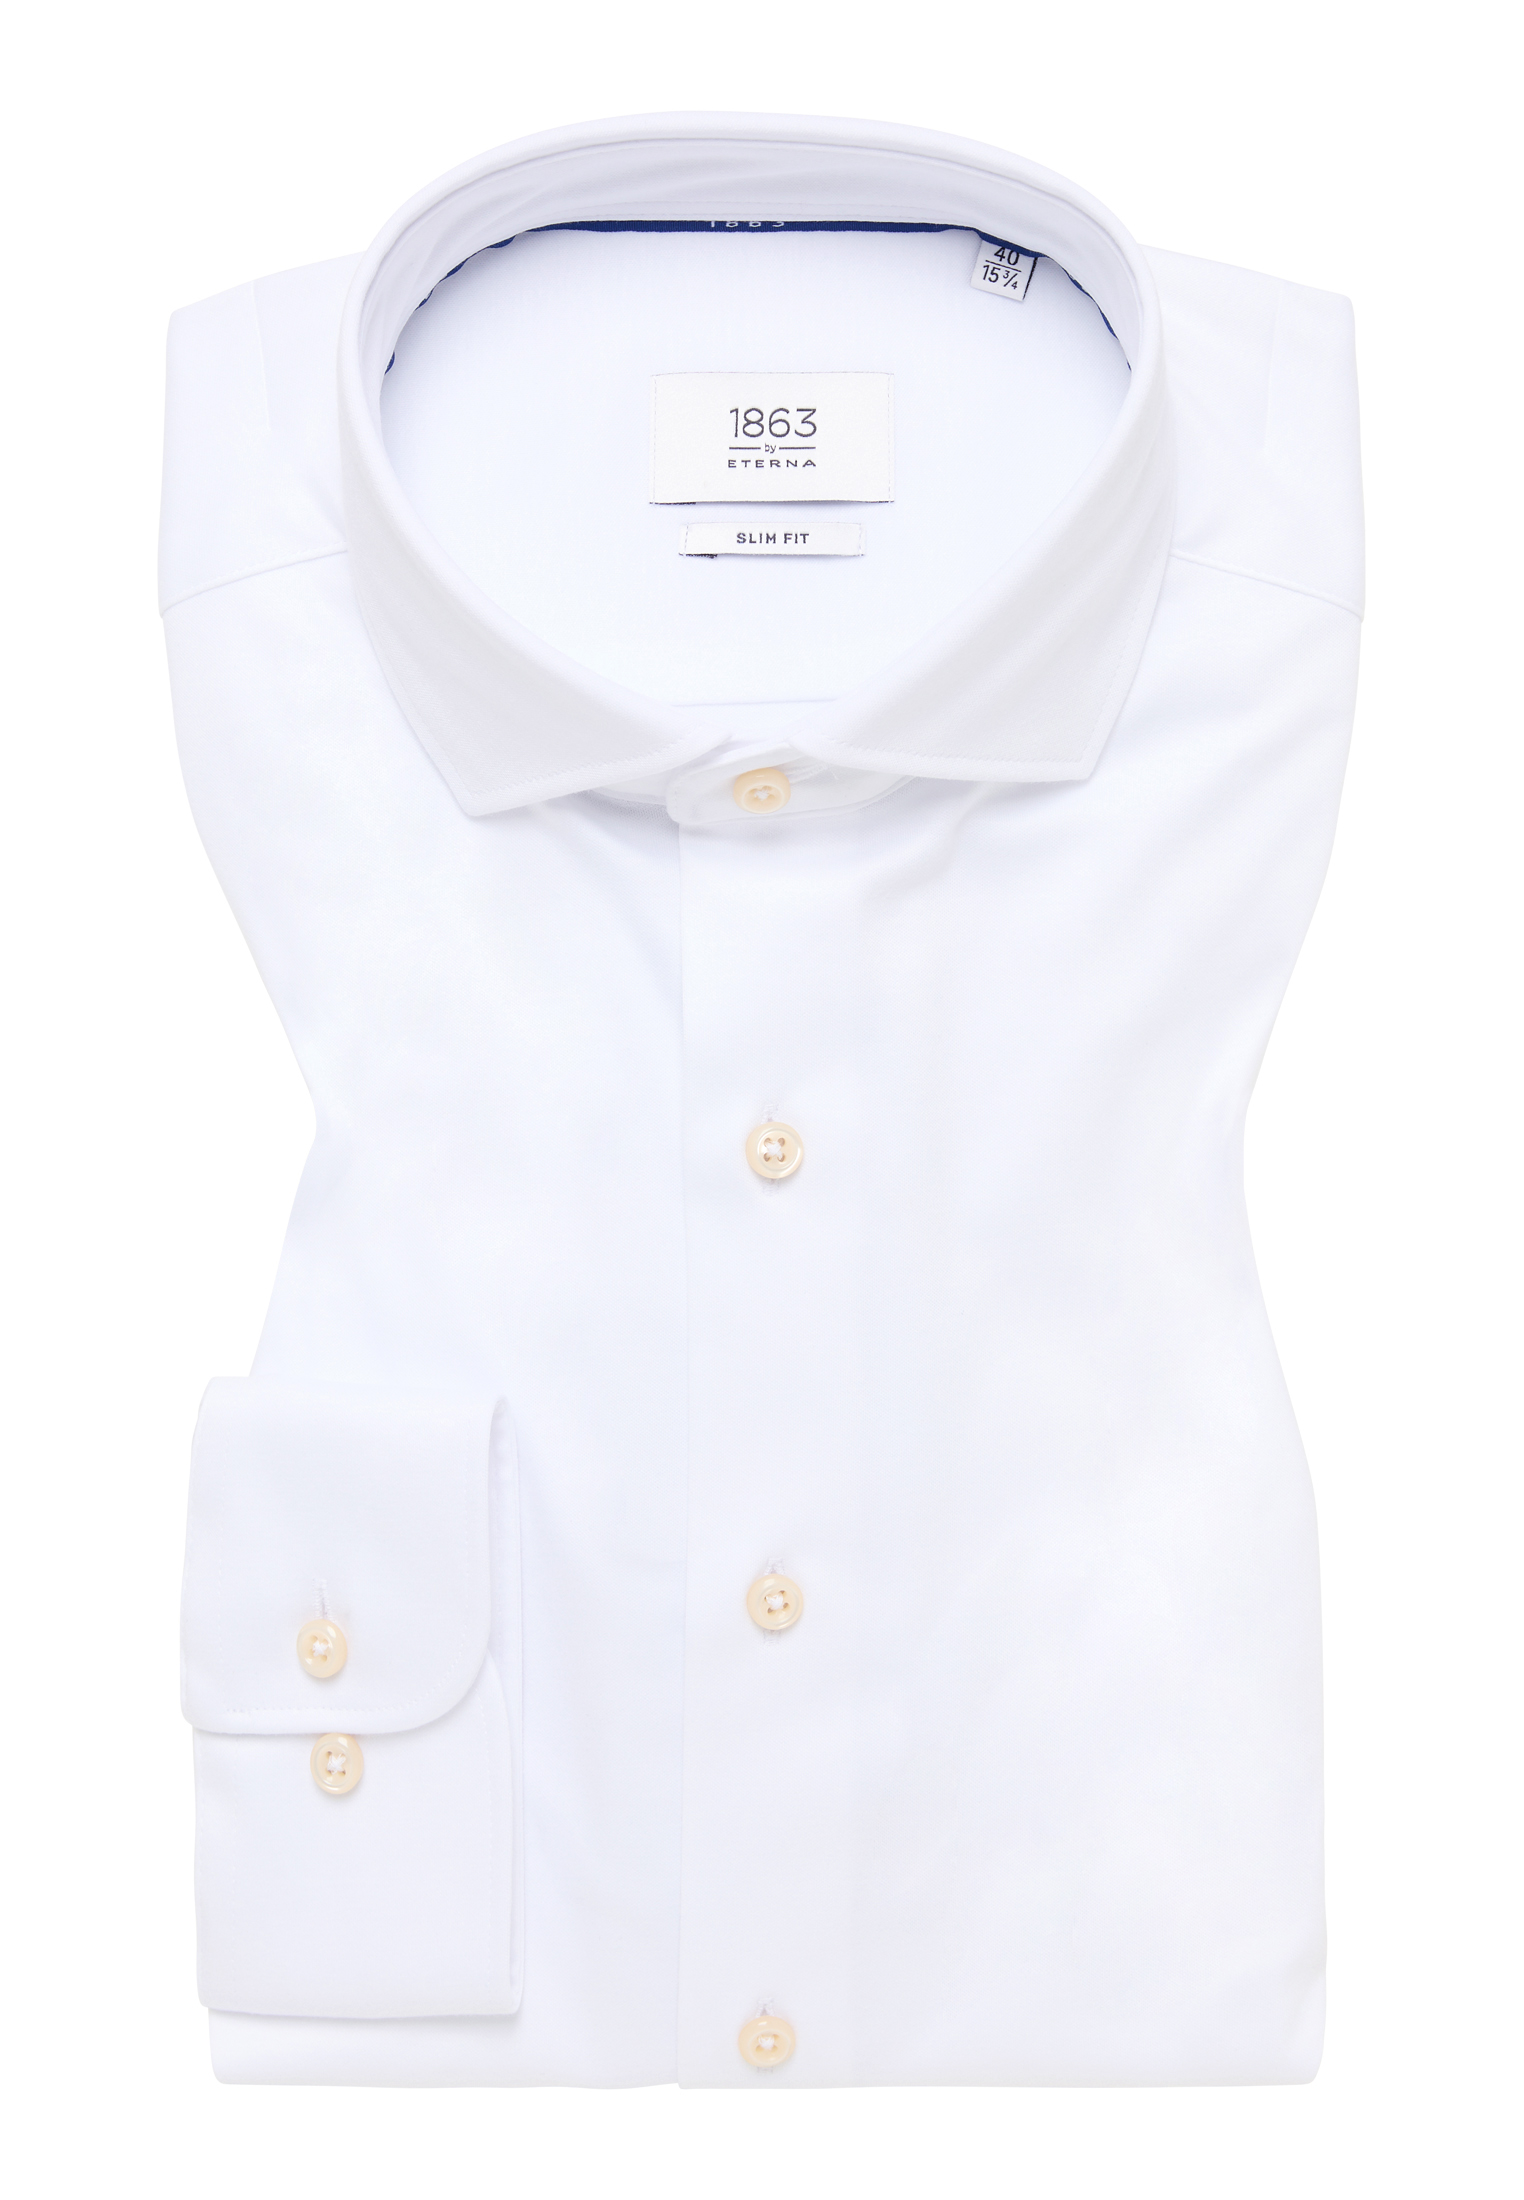 SLIM FIT Jersey Shirt in weiß | | | weiß | unifarben Langarm 1SH00378-00-01-40-1/1 40